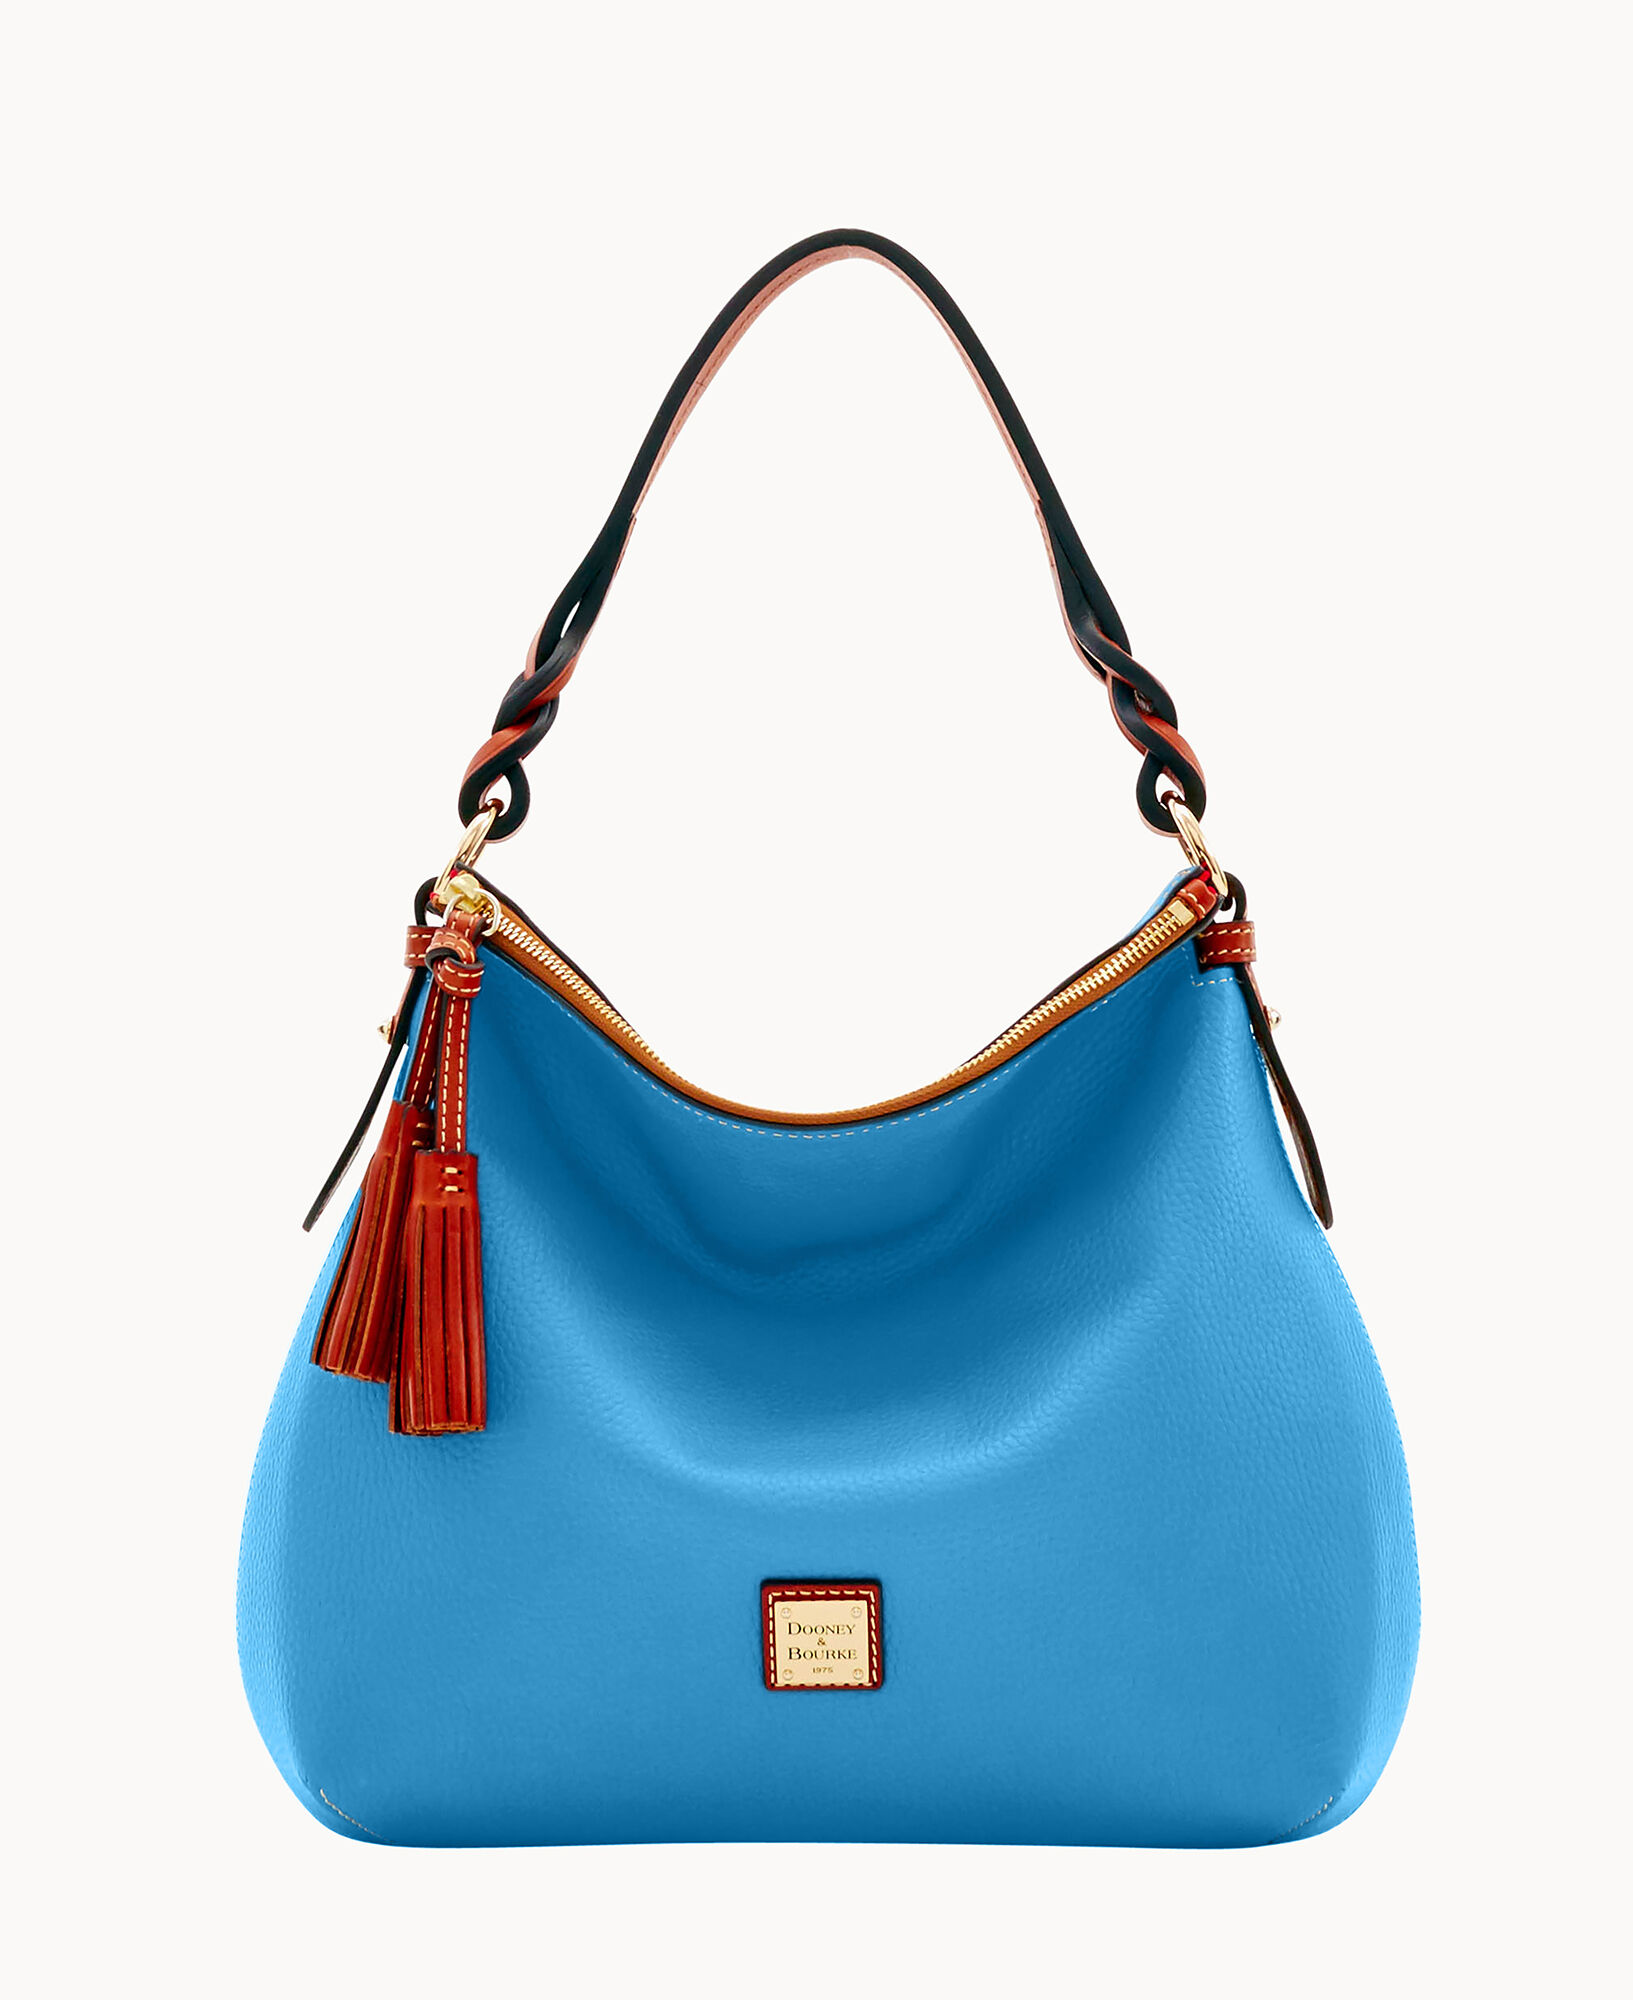 Dooney and Bourke Handbags - Leather Blue Shoulder Hobo Bag